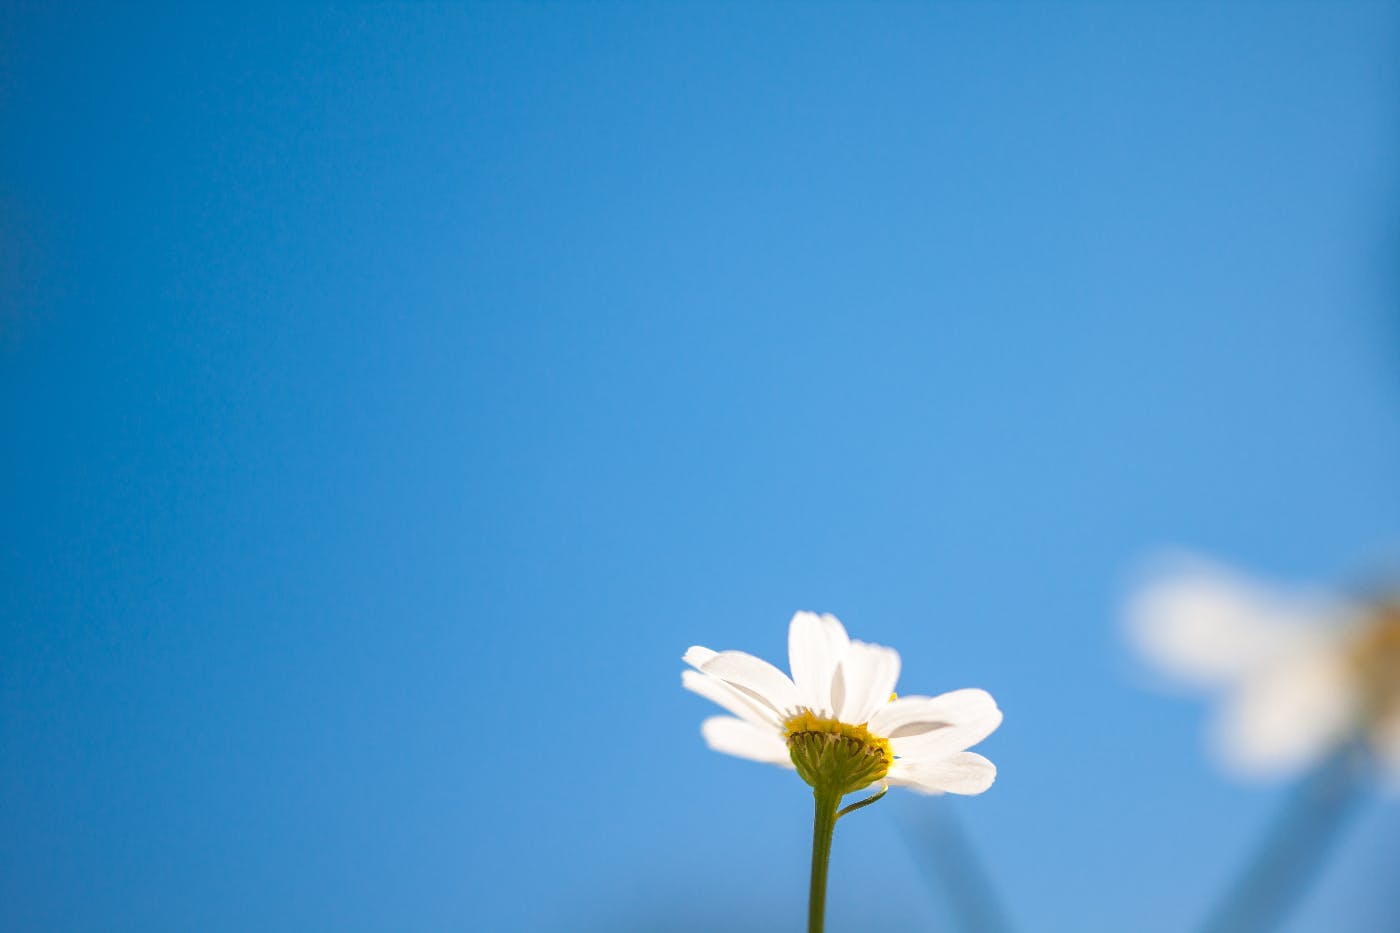 a single daisy against a clear blue sky